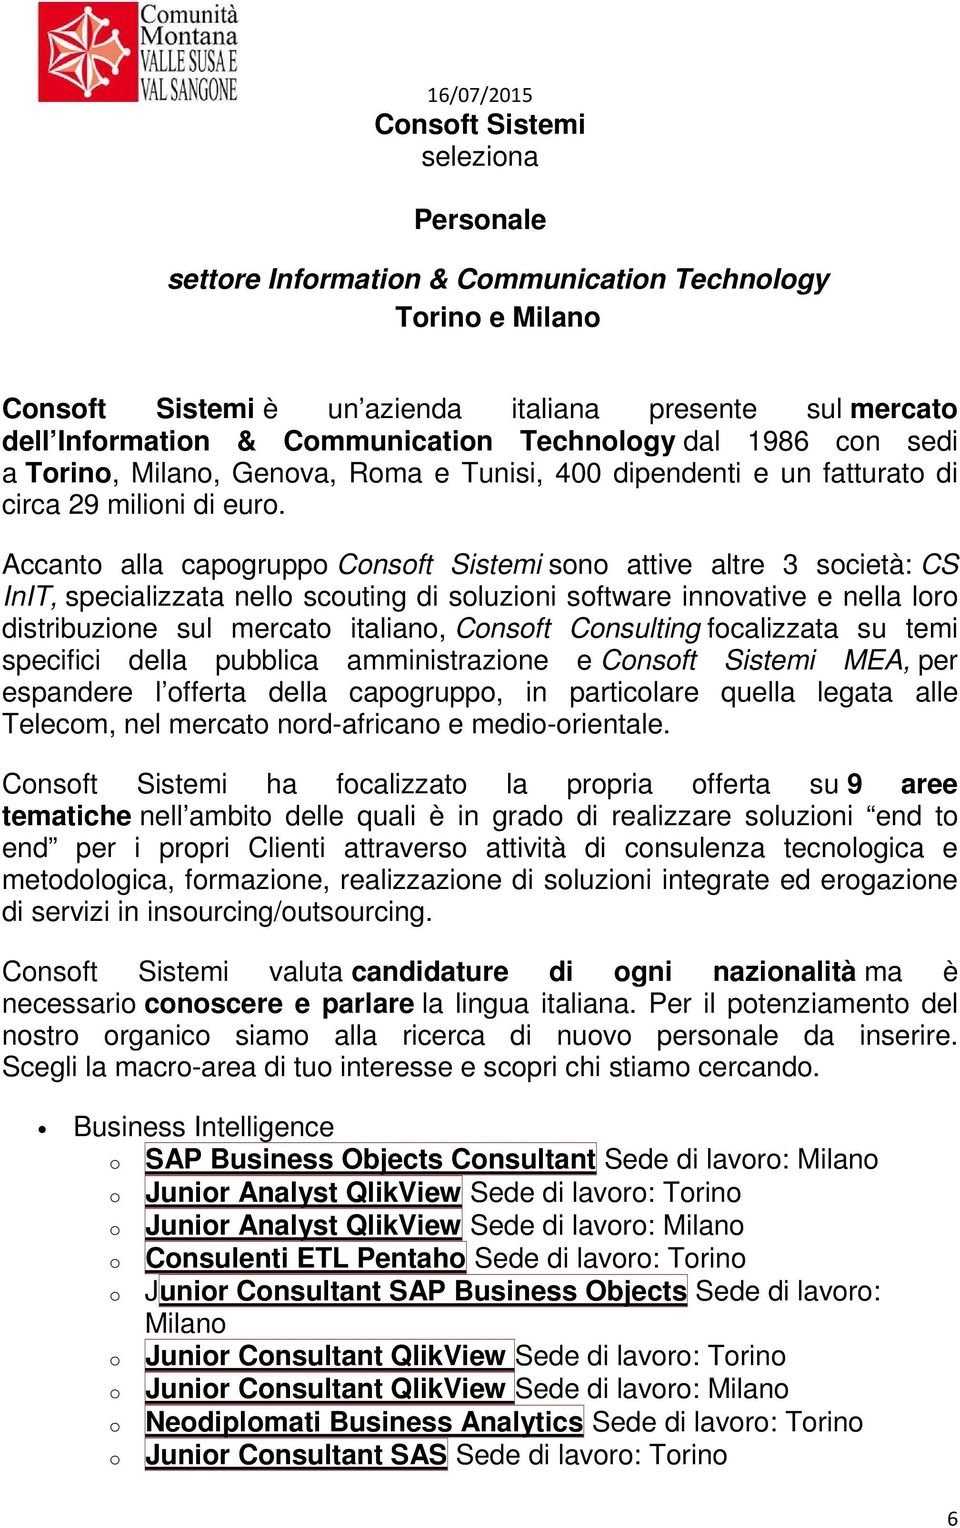 Accanto alla capogruppo Consoft Sistemi sono attive altre 3 società: CS InIT, specializzata nello scouting di soluzioni software innovative e nella loro distribuzione sul mercato italiano, Consoft